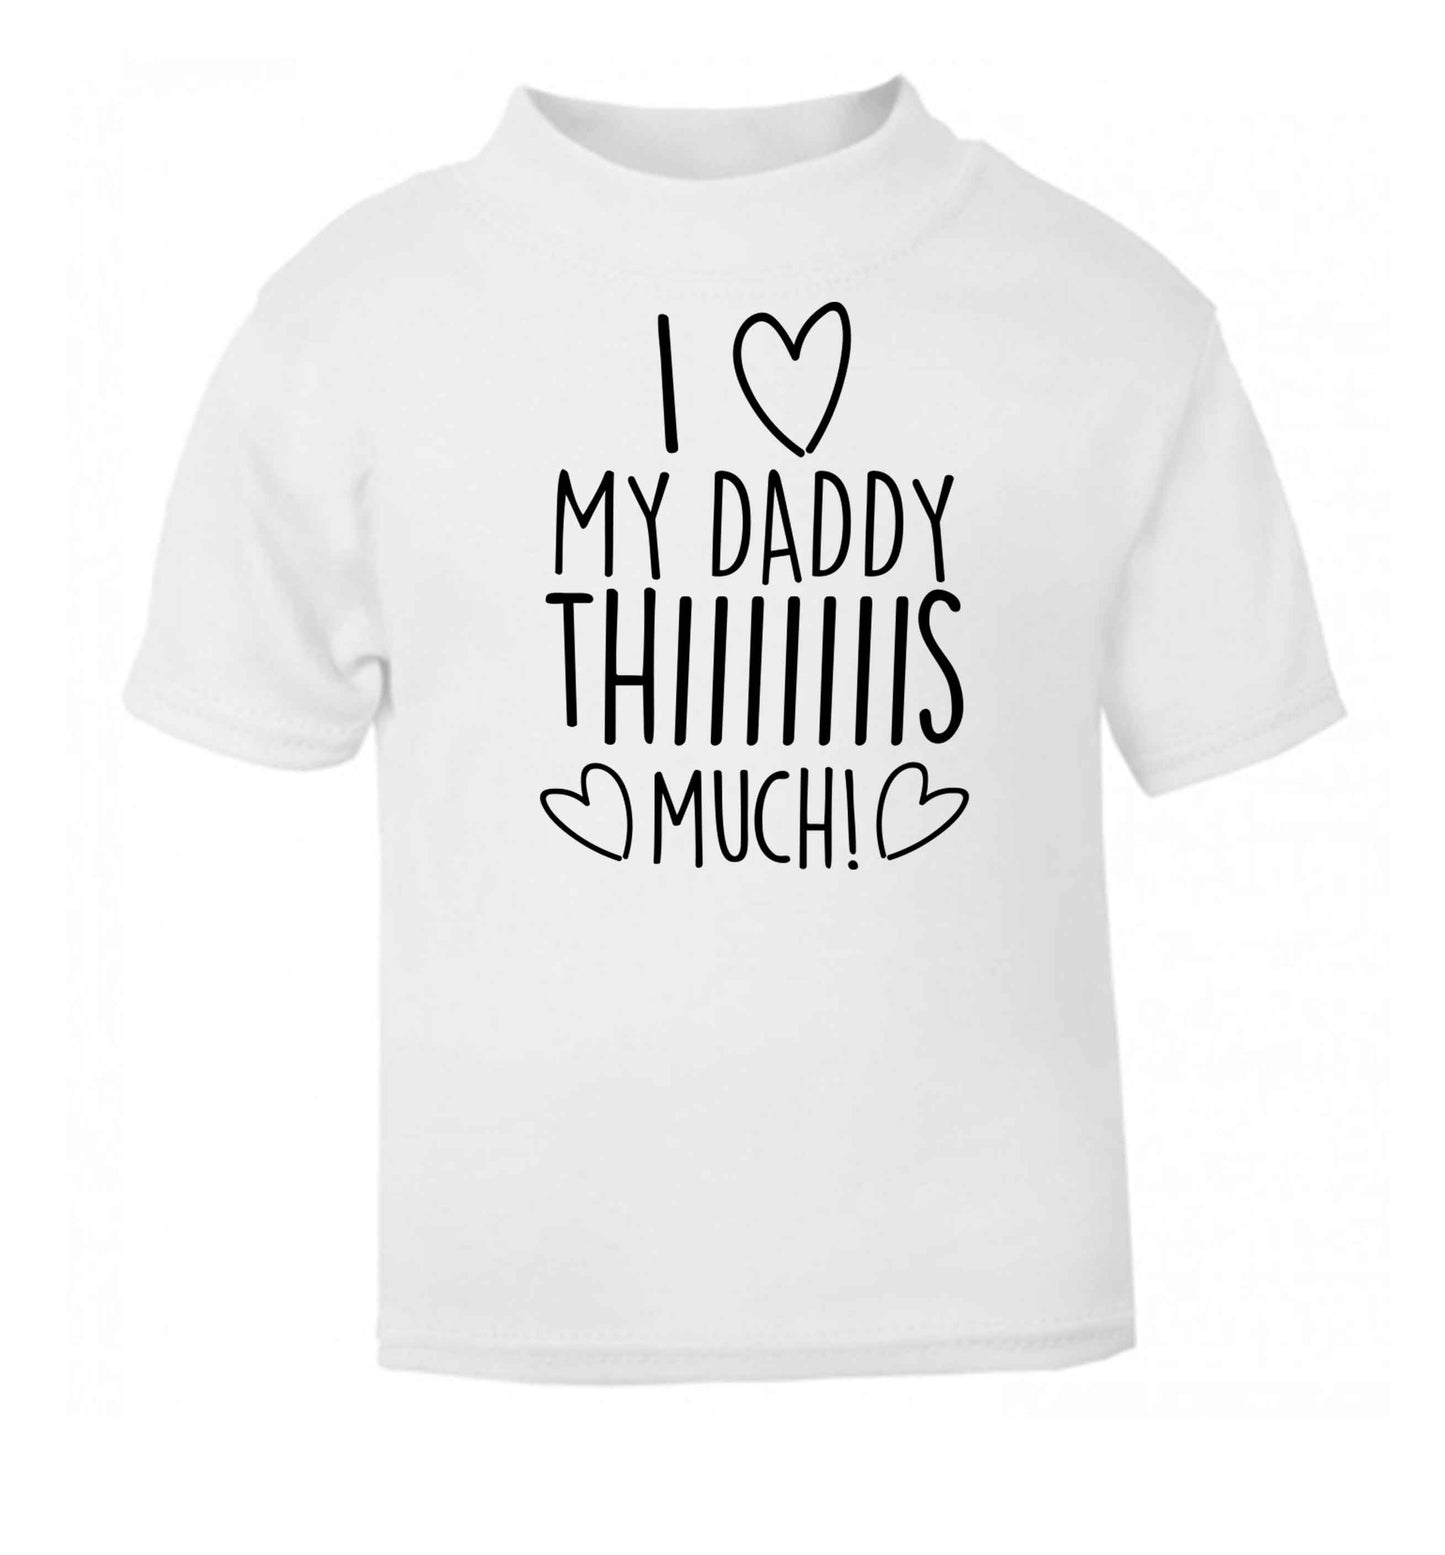 I love my daddy thiiiiis much! white baby toddler Tshirt 2 Years